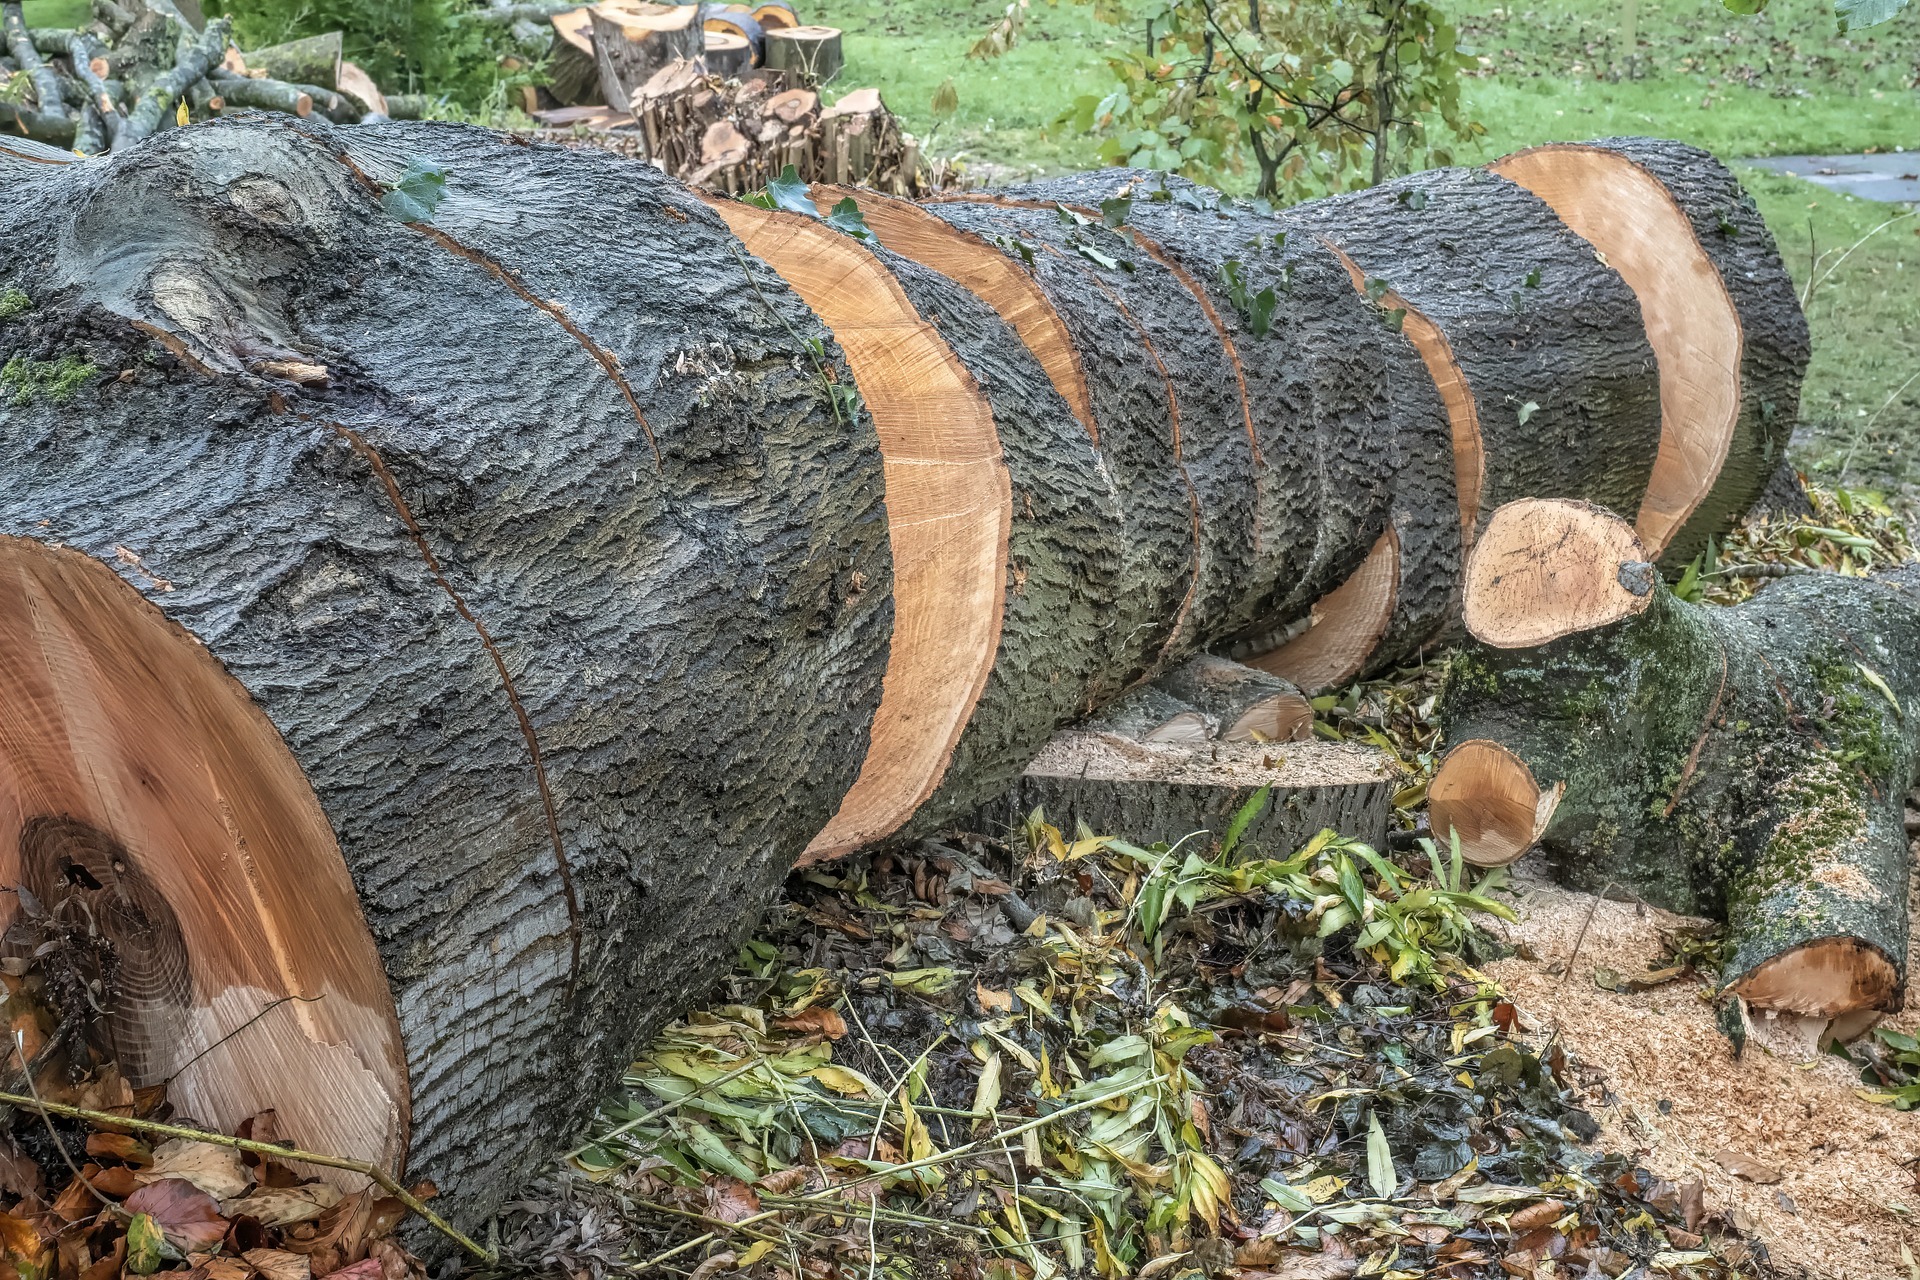 Seis árvores foram derrubadas por segundo na bacia do Xingu em 2019 (Foto: Pixabay)